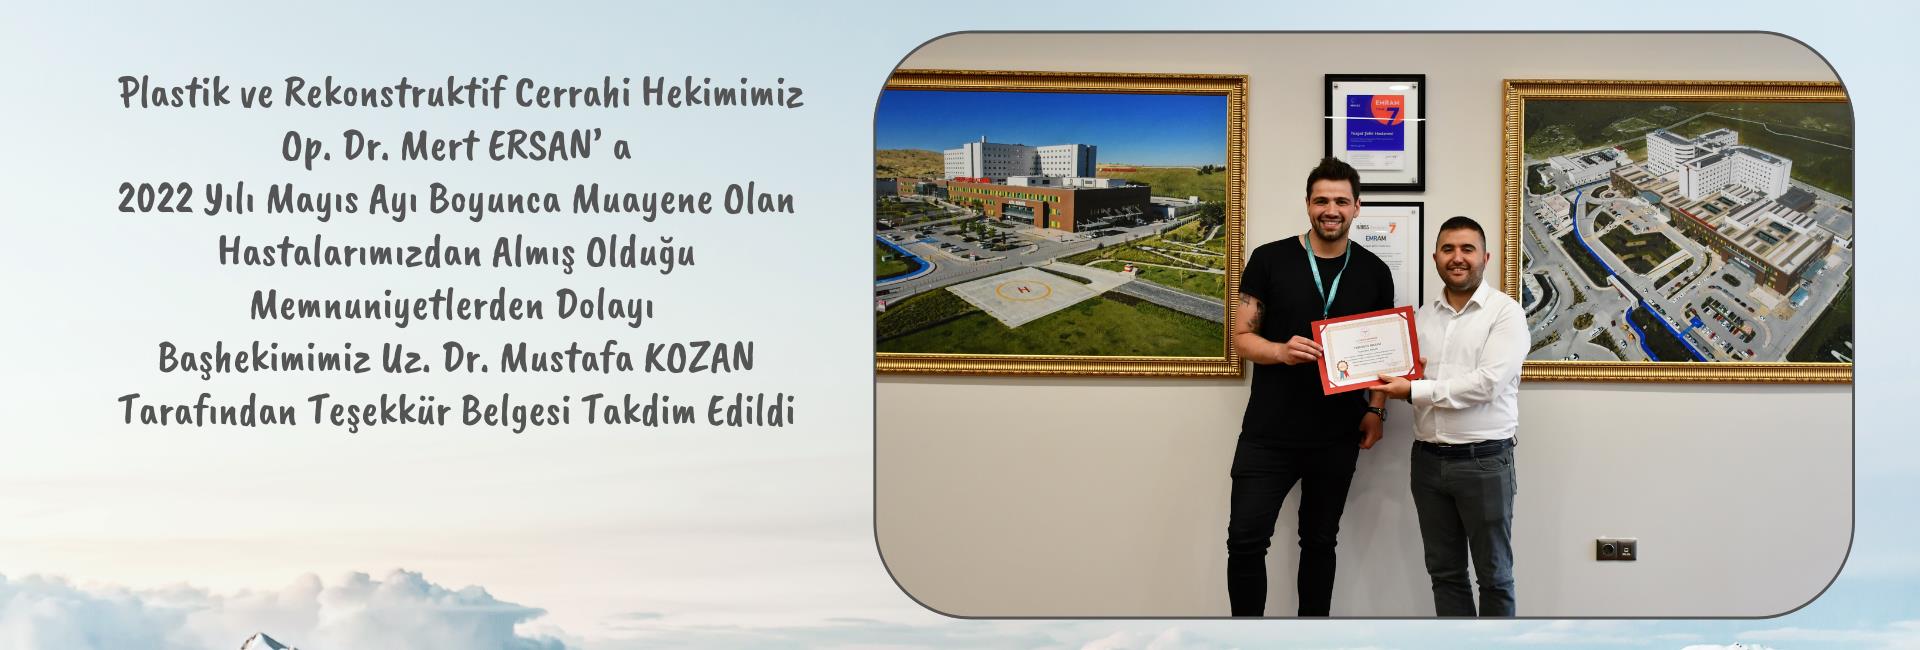 Başhekimimiz Uz. Dr. Mustafa KOZAN Plastik Cerrahi Hekimimiz Op. Dr. Mert ERSAN' a Teşekkür Belgesi Taktim Etti